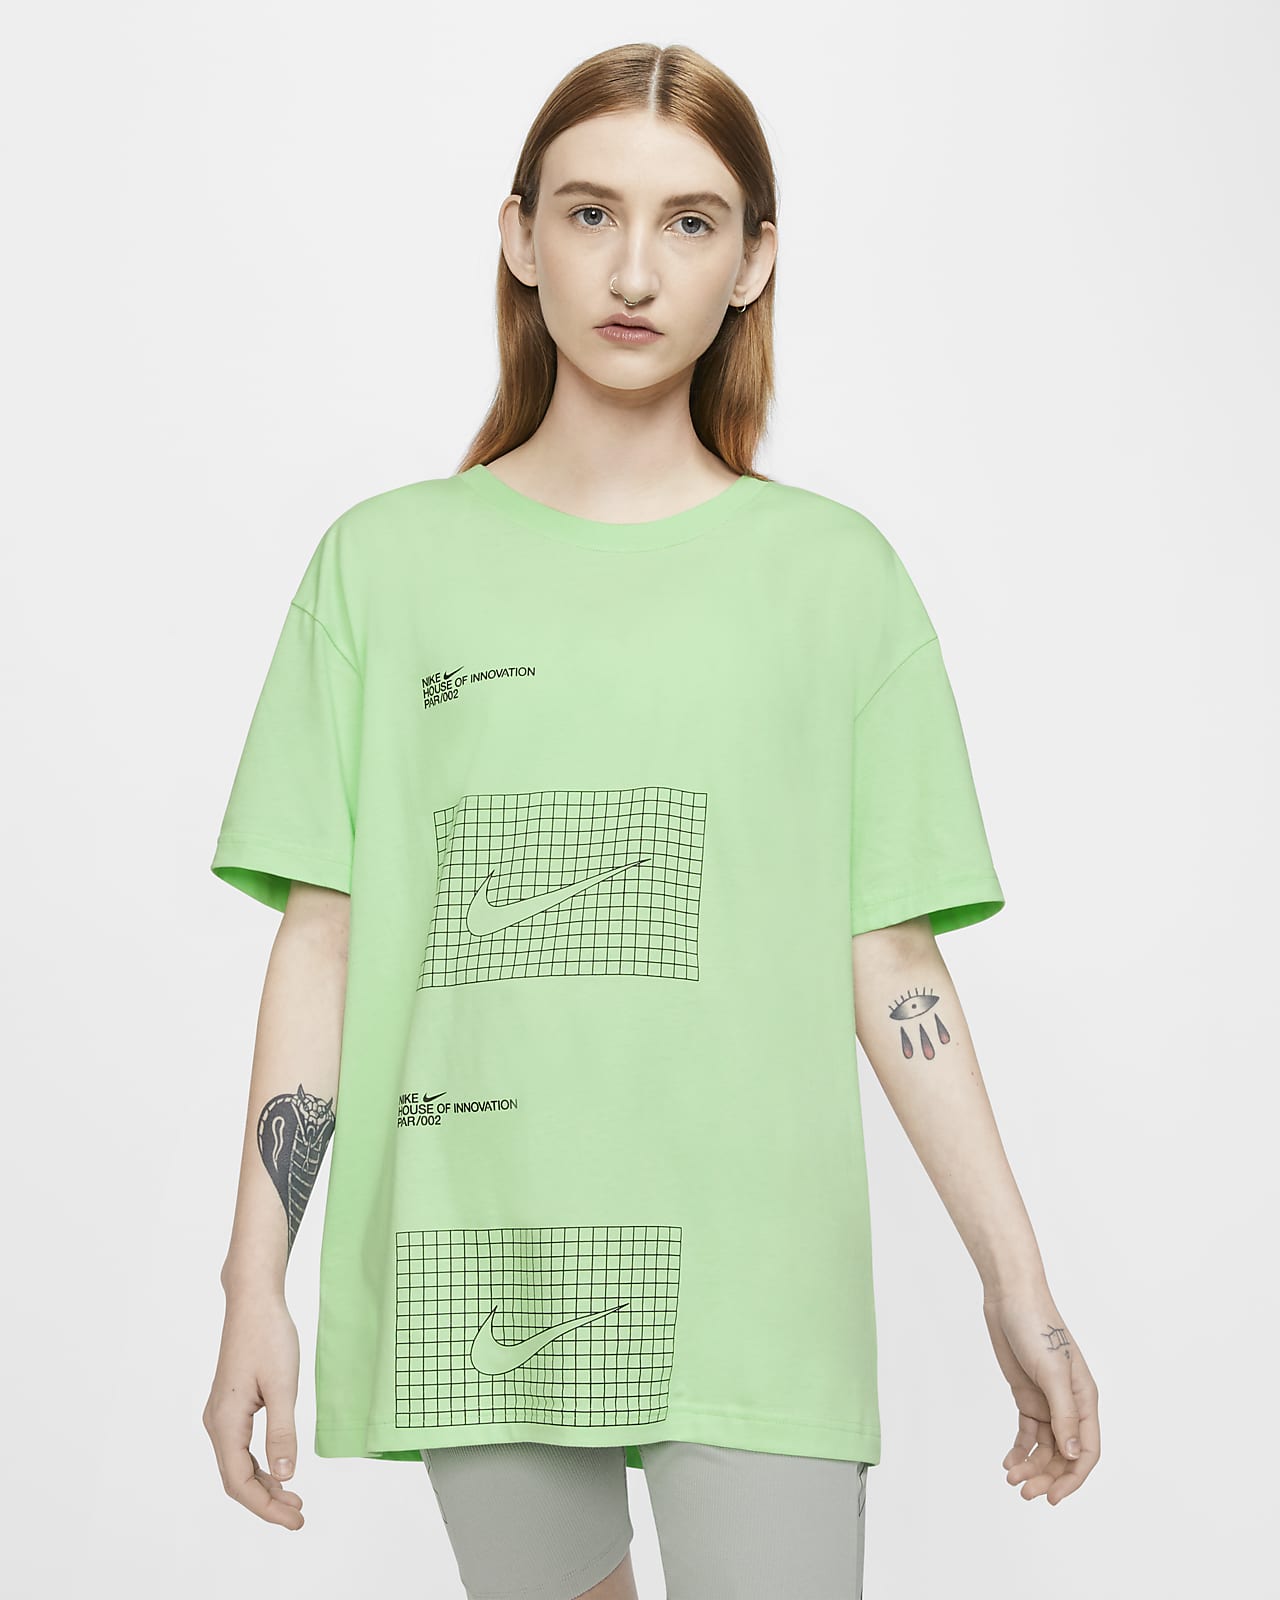 green nike shirt women's